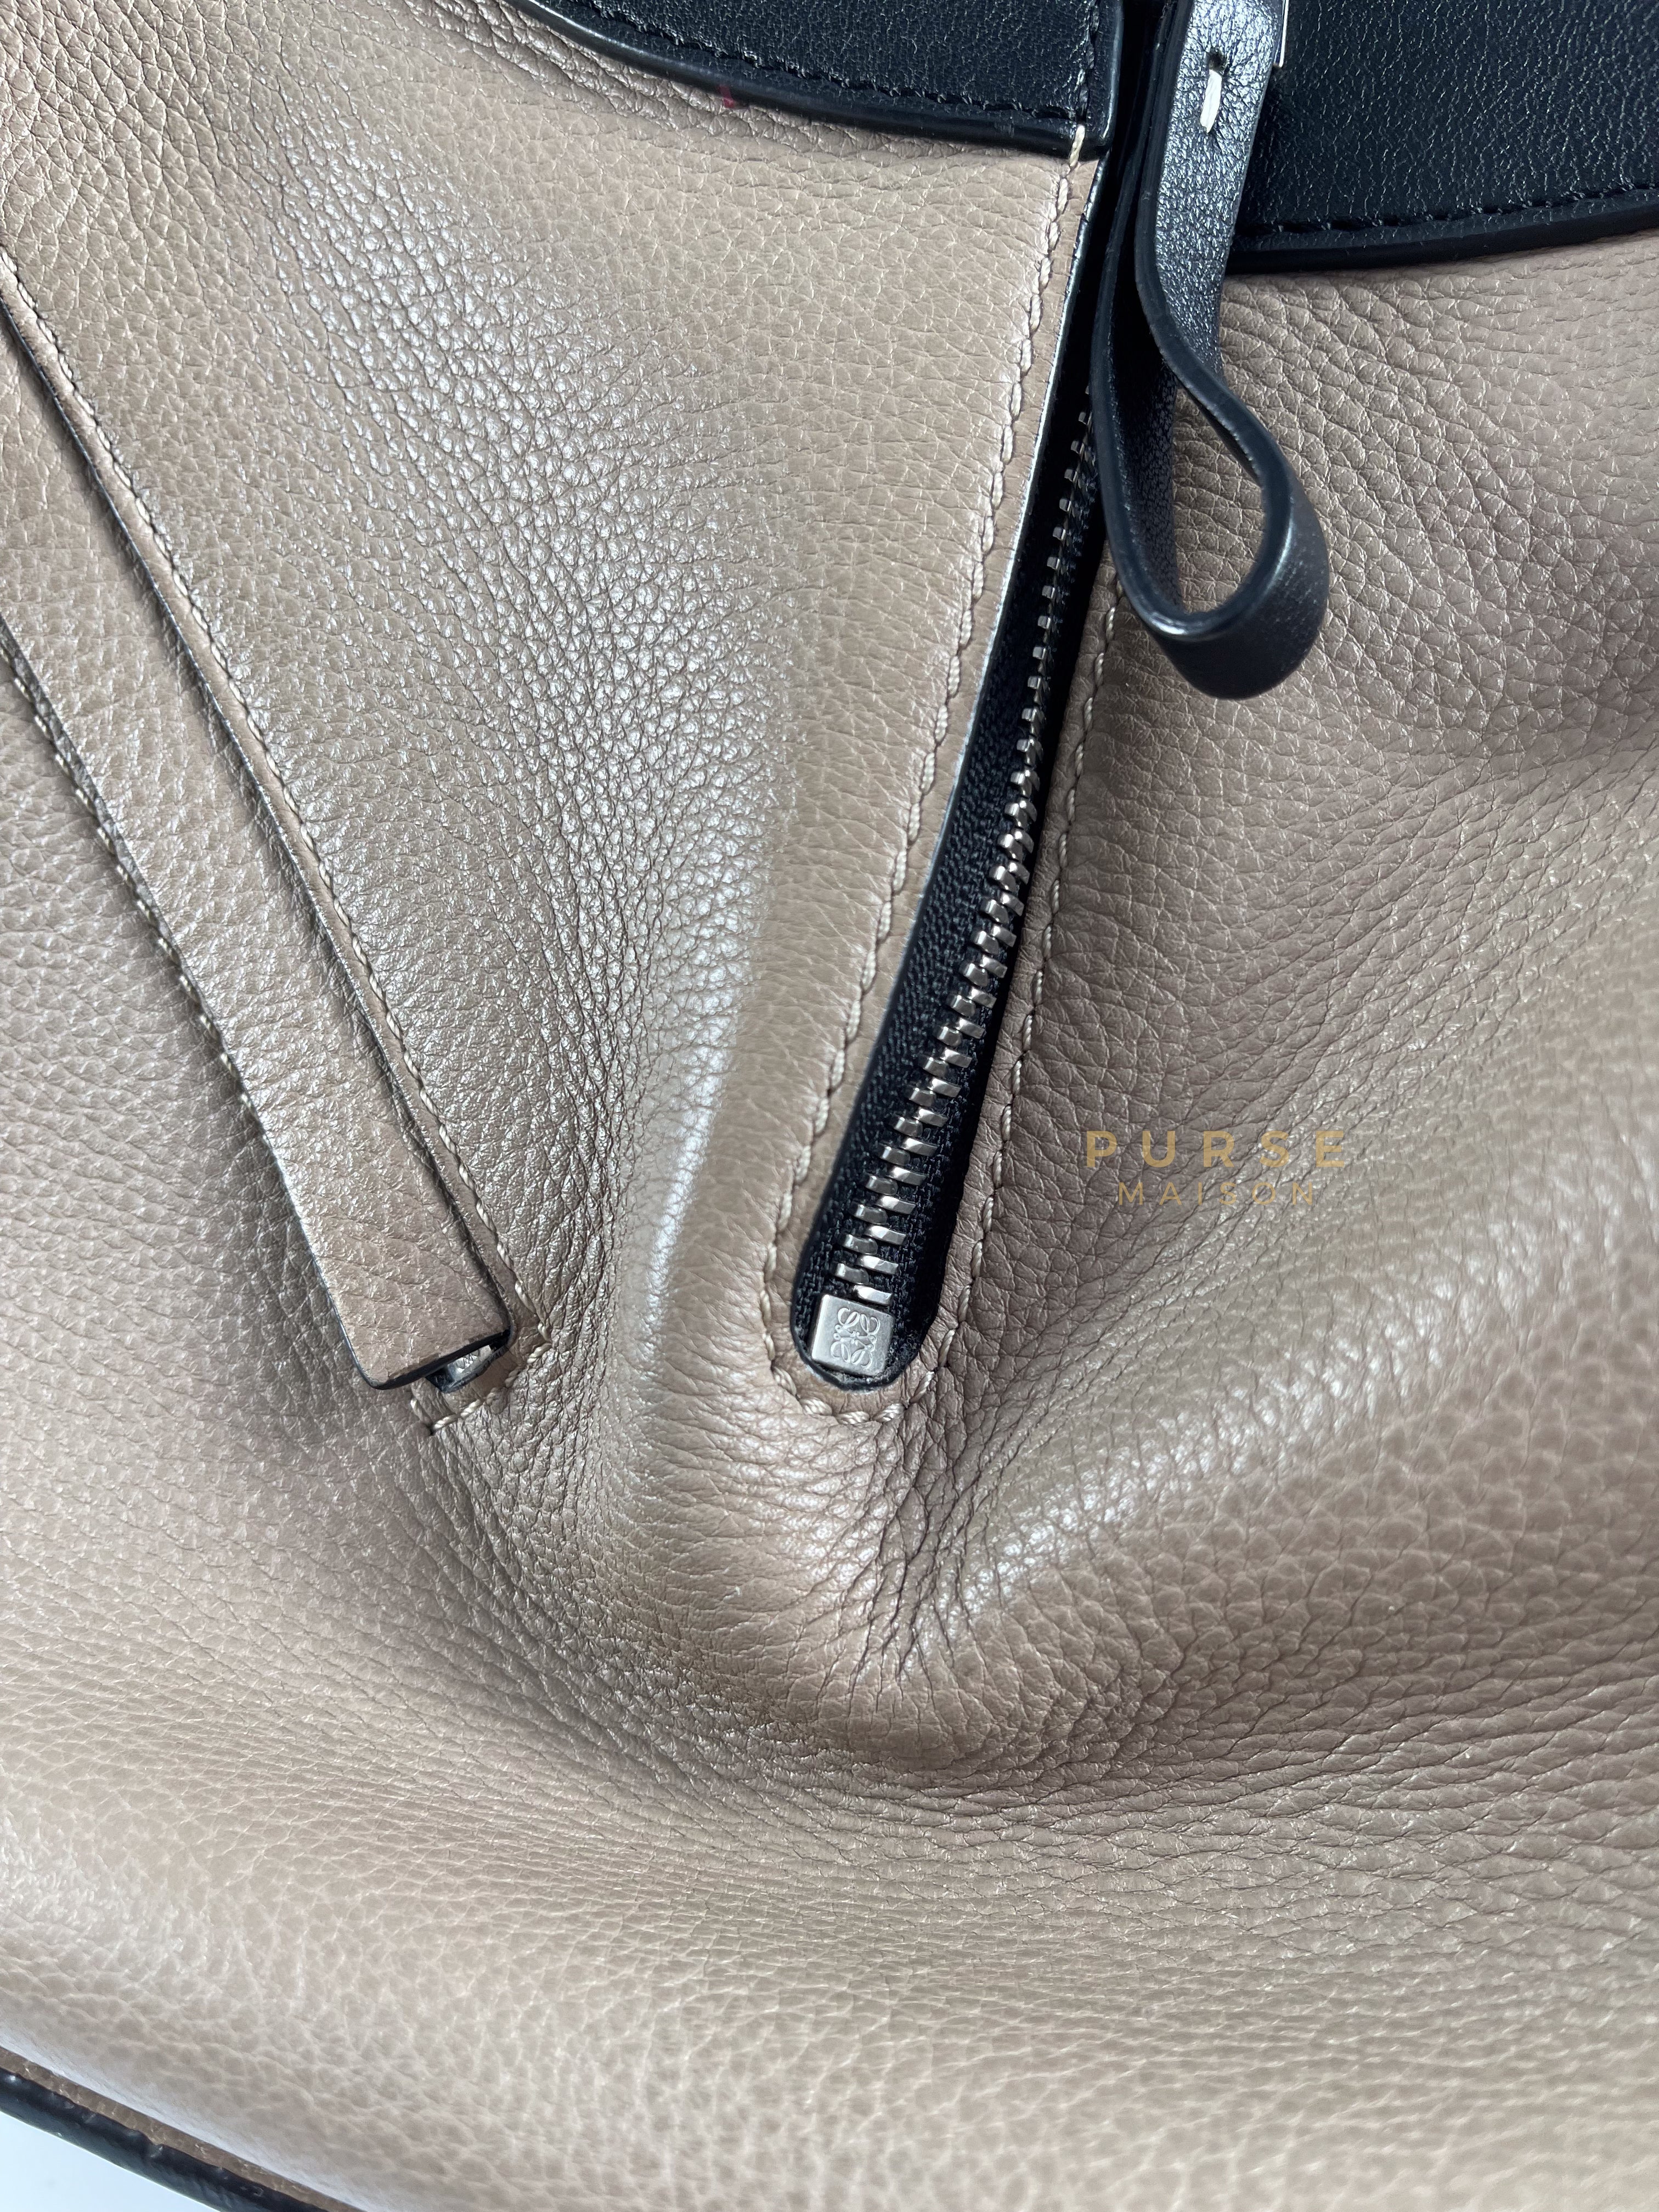 Hammock Small Shoulder Bag Tricolor | Purse Maison Luxury Bags Shop